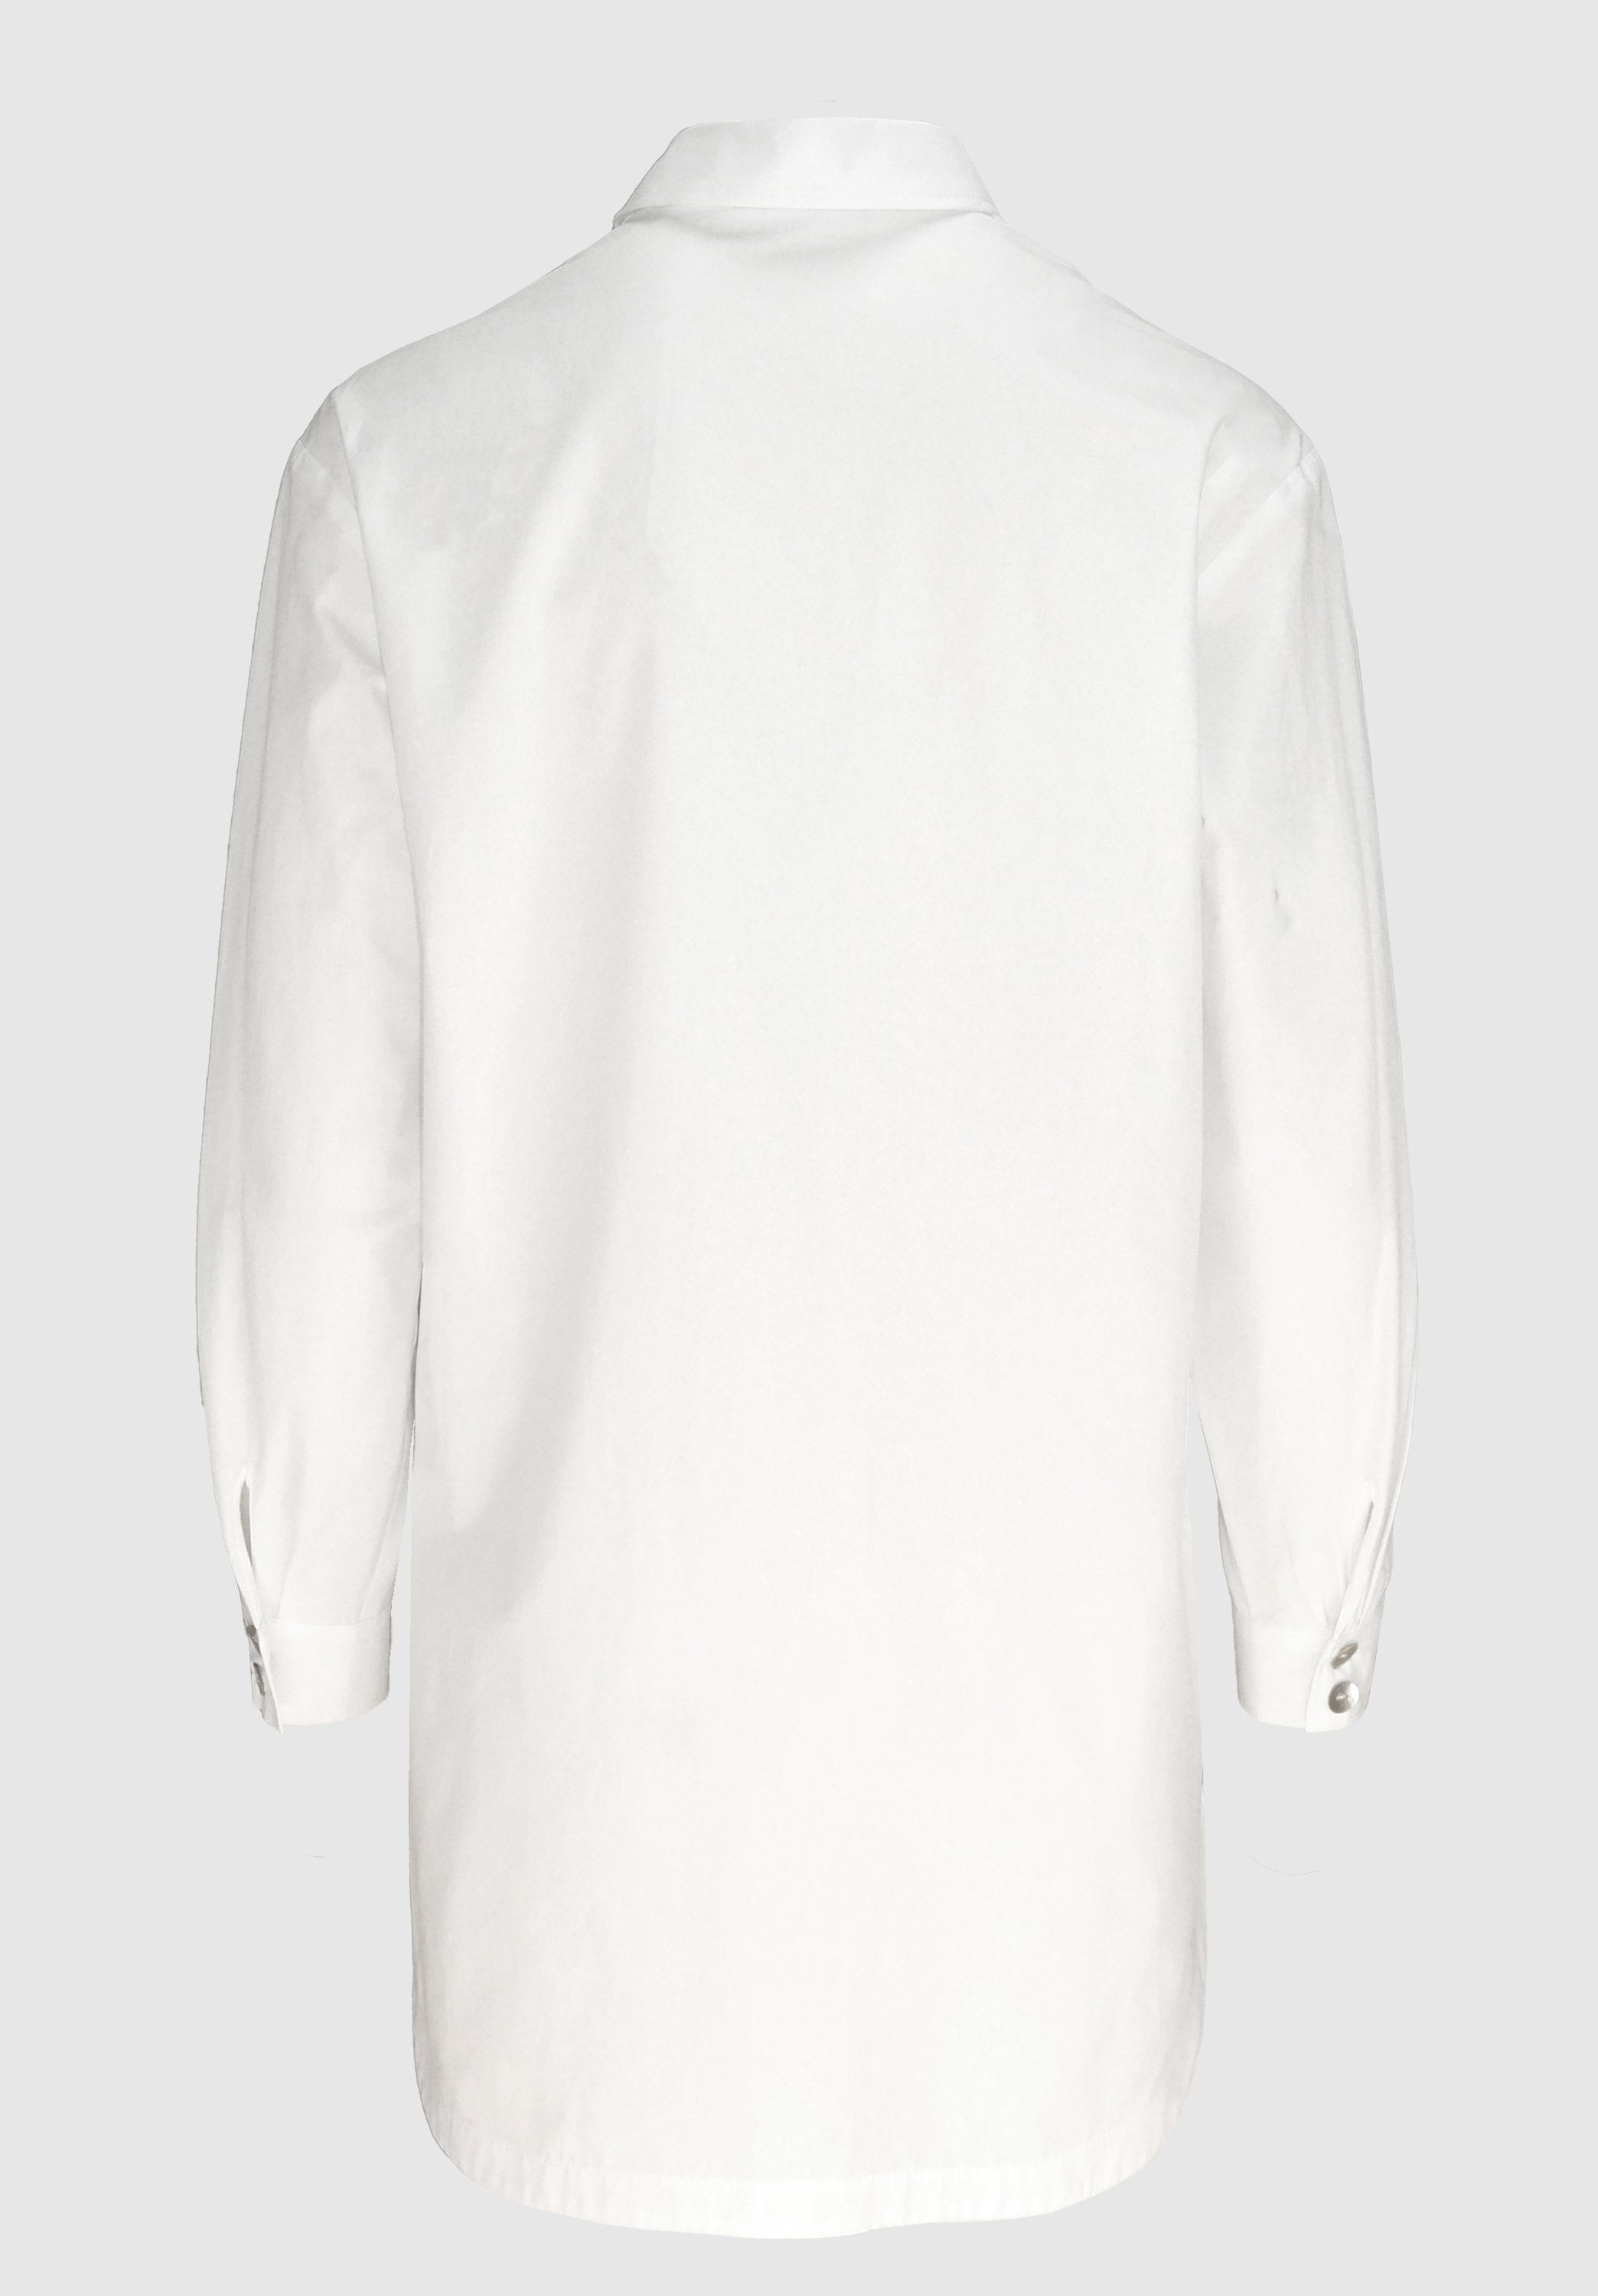 längerer Hemdbluse in Form white stylischen Details moderner, mit ADELA bianca